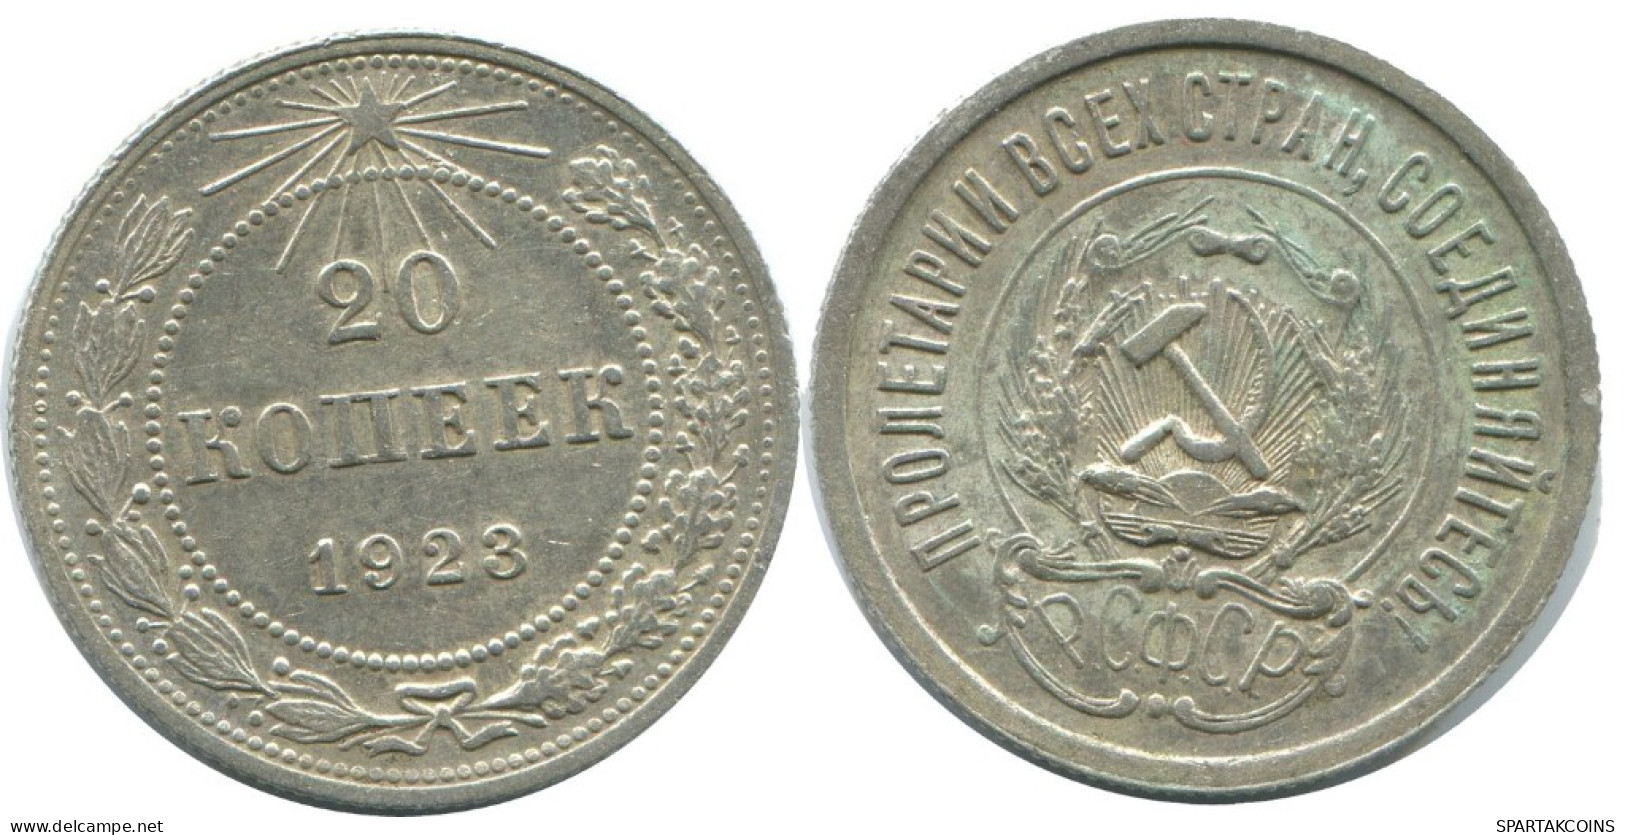 20 KOPEKS 1923 RUSSIA RSFSR SILVER Coin HIGH GRADE #AF690.U.A - Russland